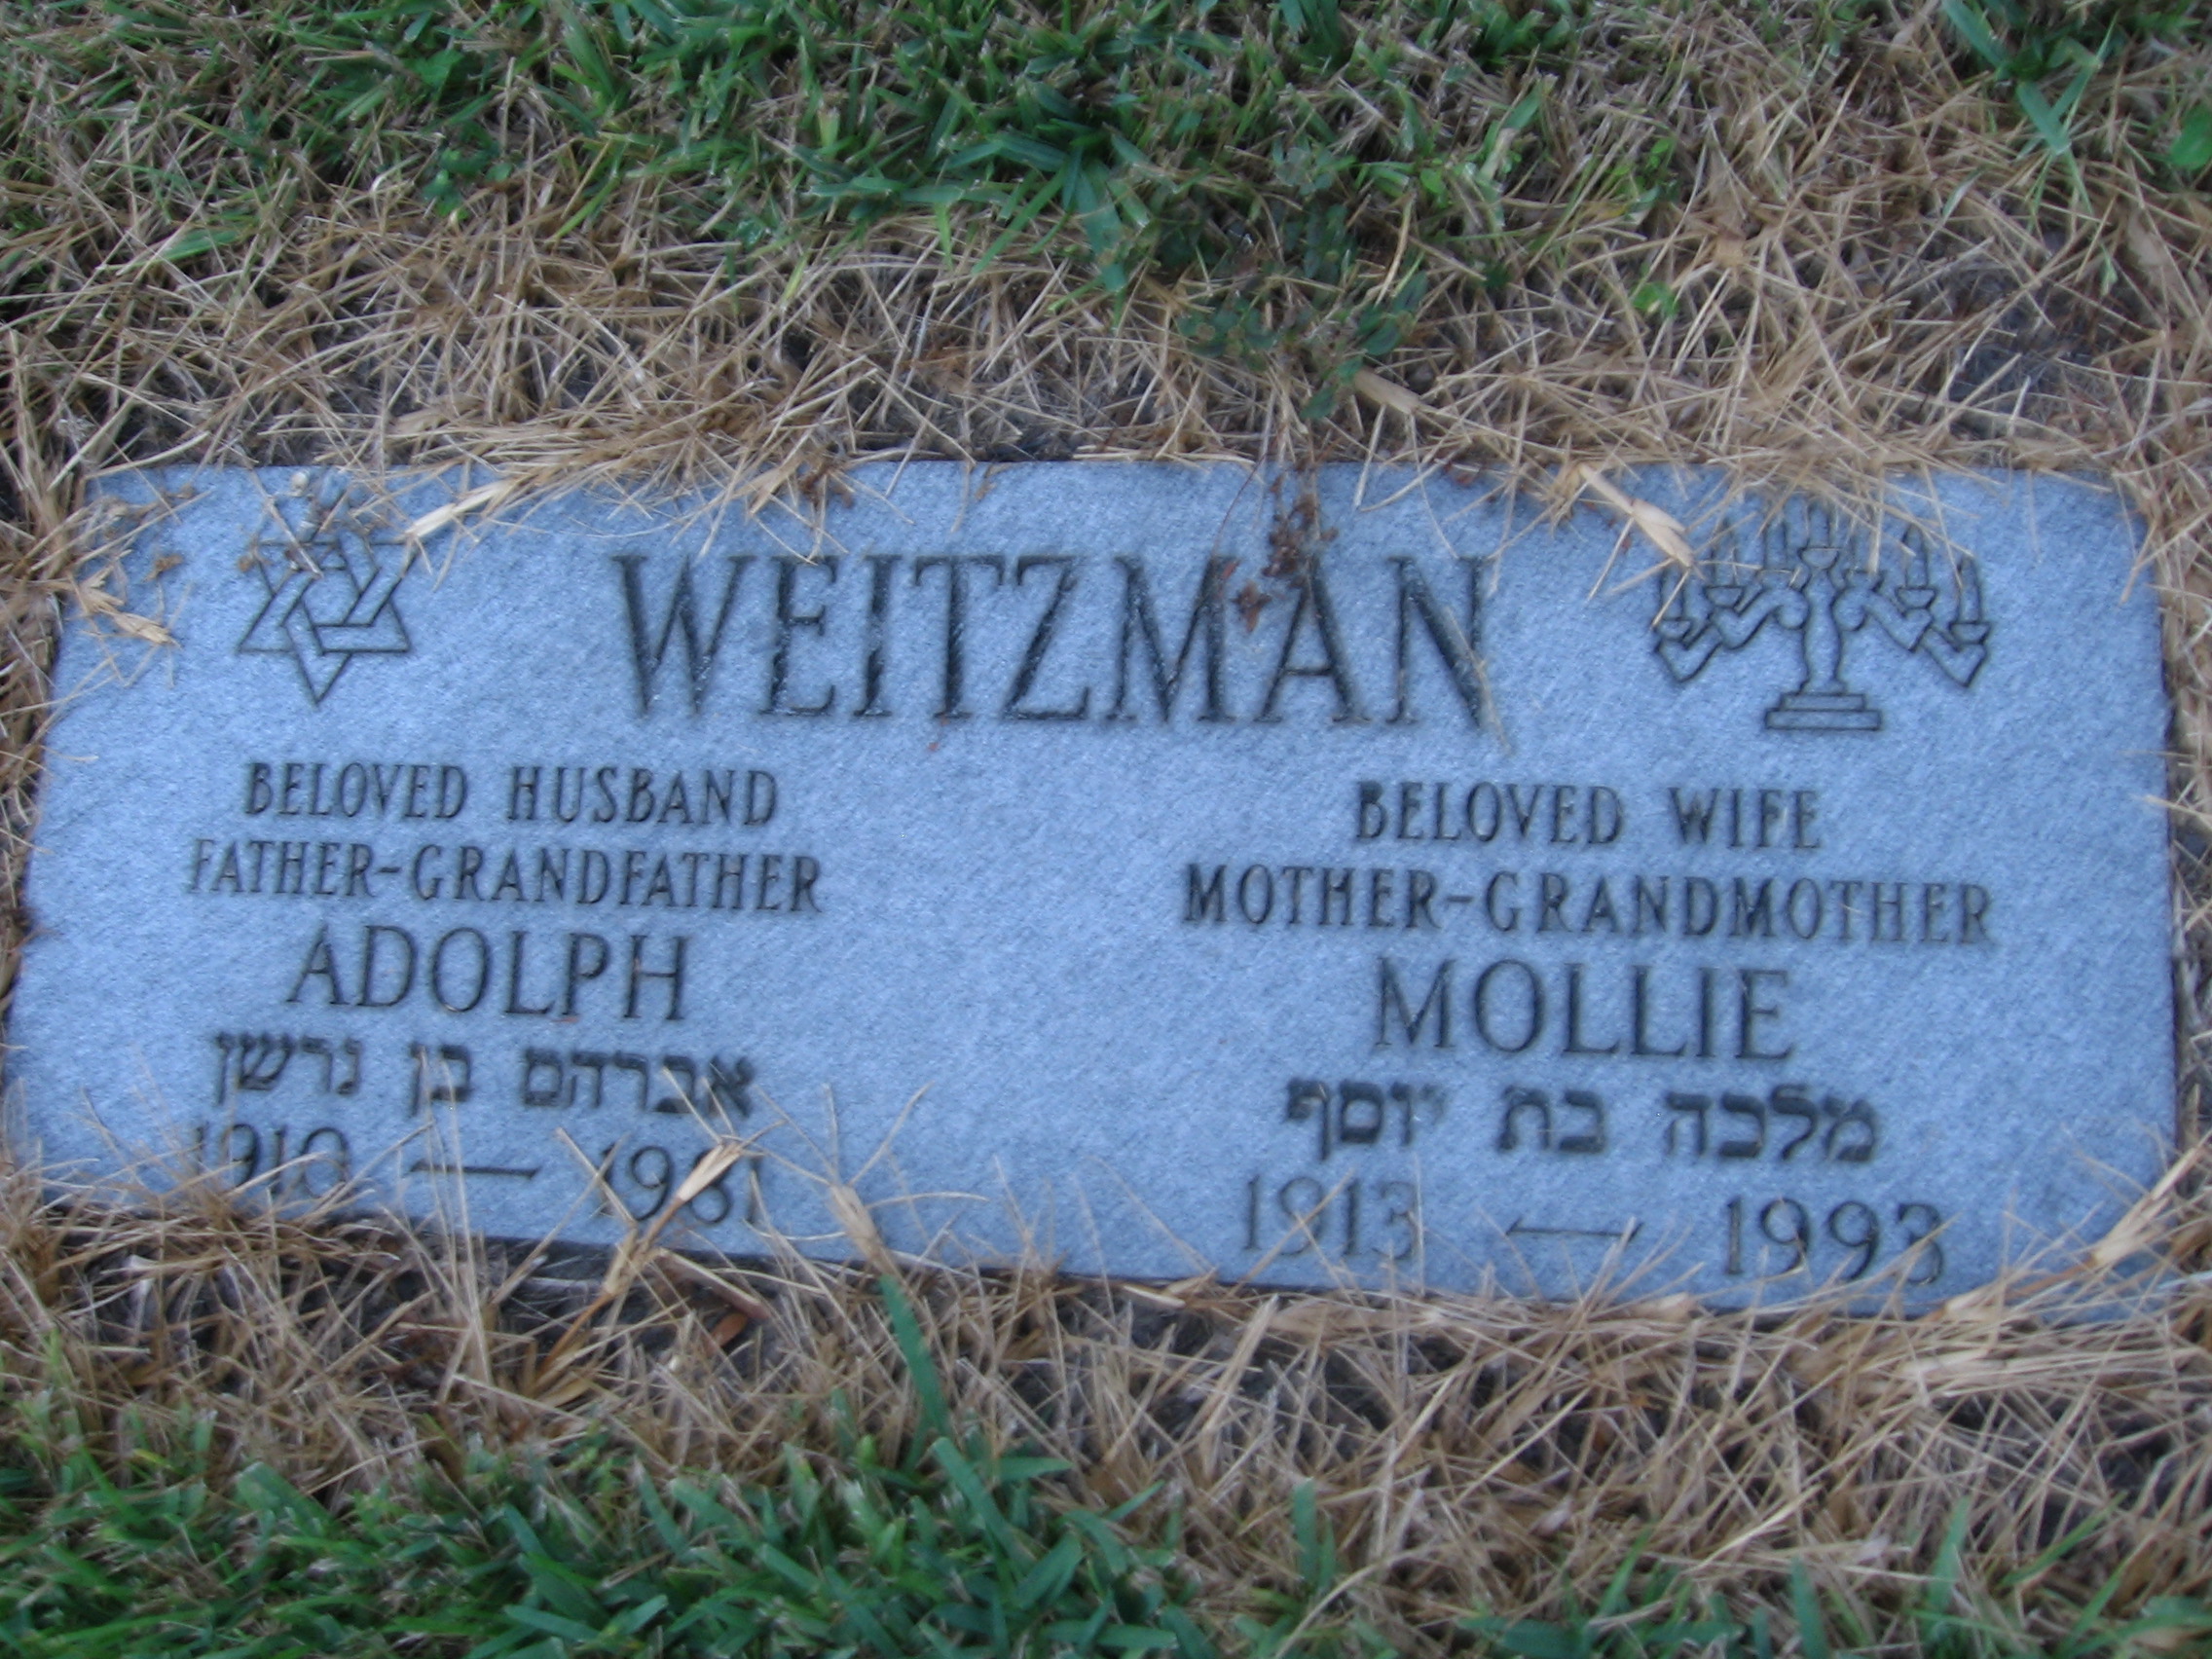 Mollie Weitzman